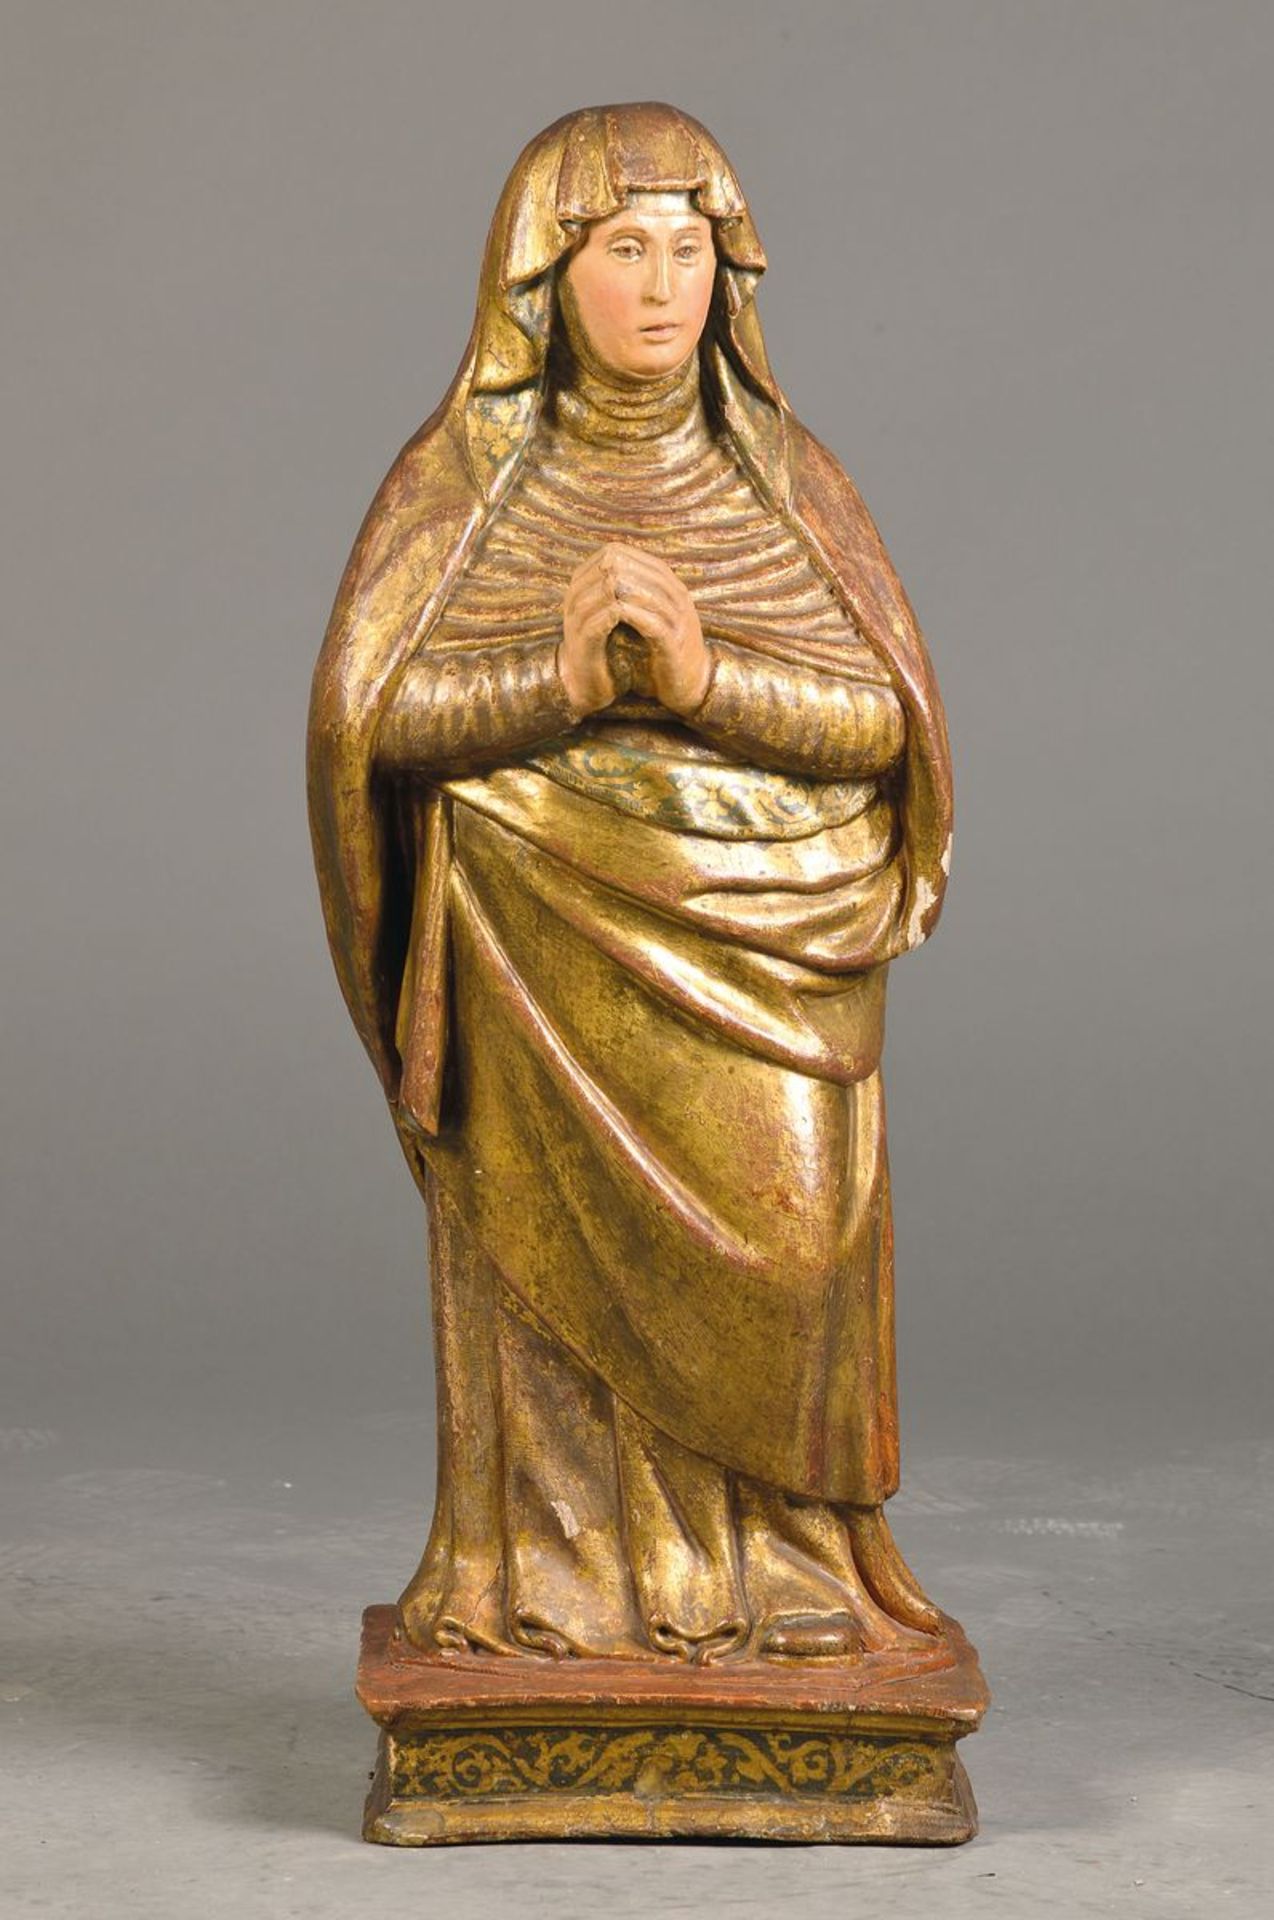 Heiligenfigur, wohl Böhmen oder Österreich, um 1580, Lindenholz, um 1820 komplett überschnitzt und